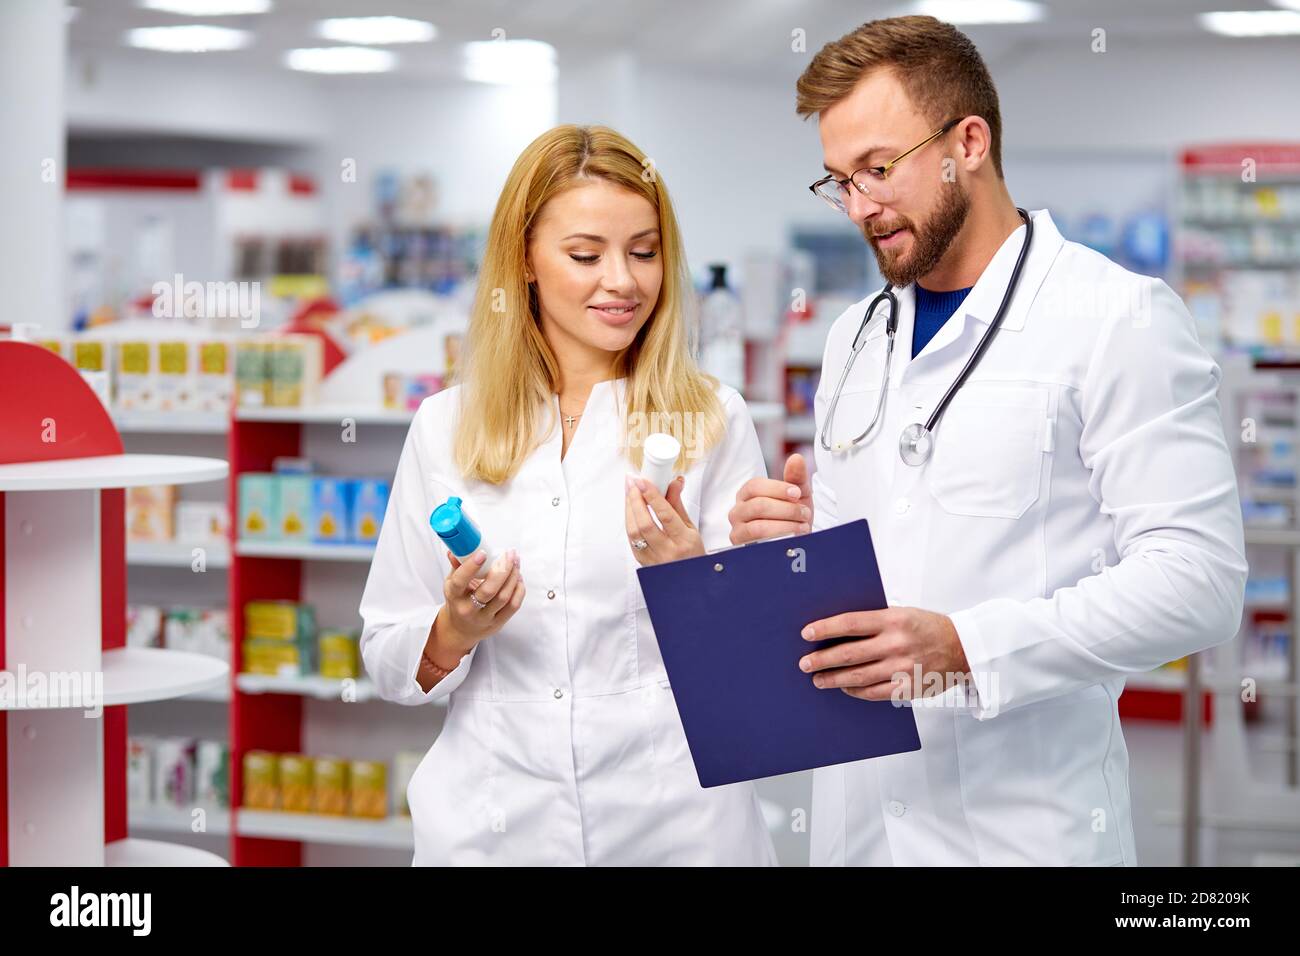 Zwei junge kaukasische Kollegen in weißen medizinischen Kittel Apotheker erfüllen ein Rezept halten Medikamente in der Hand, die Überprüfung der Schrift Stockfoto